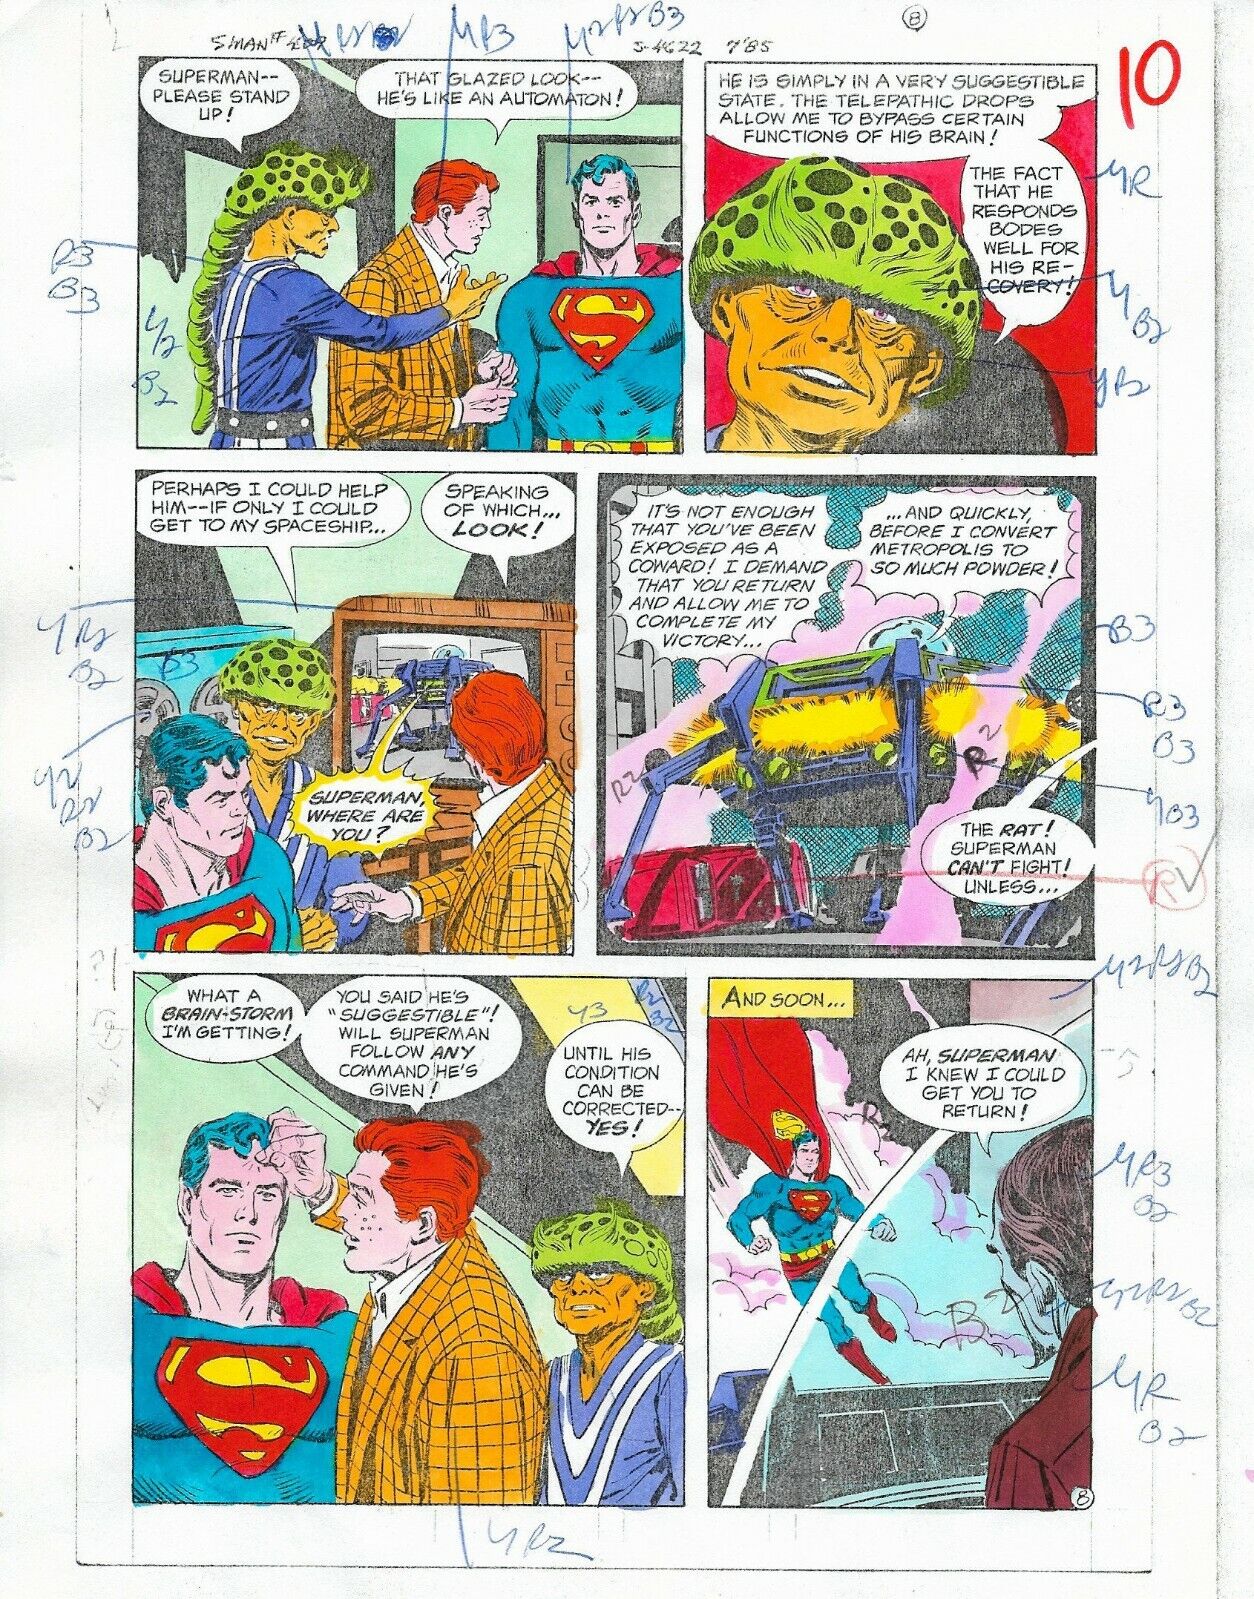 Original 1985 Superman 409 page 10 DC Comics color guide art colorist\'s artwork